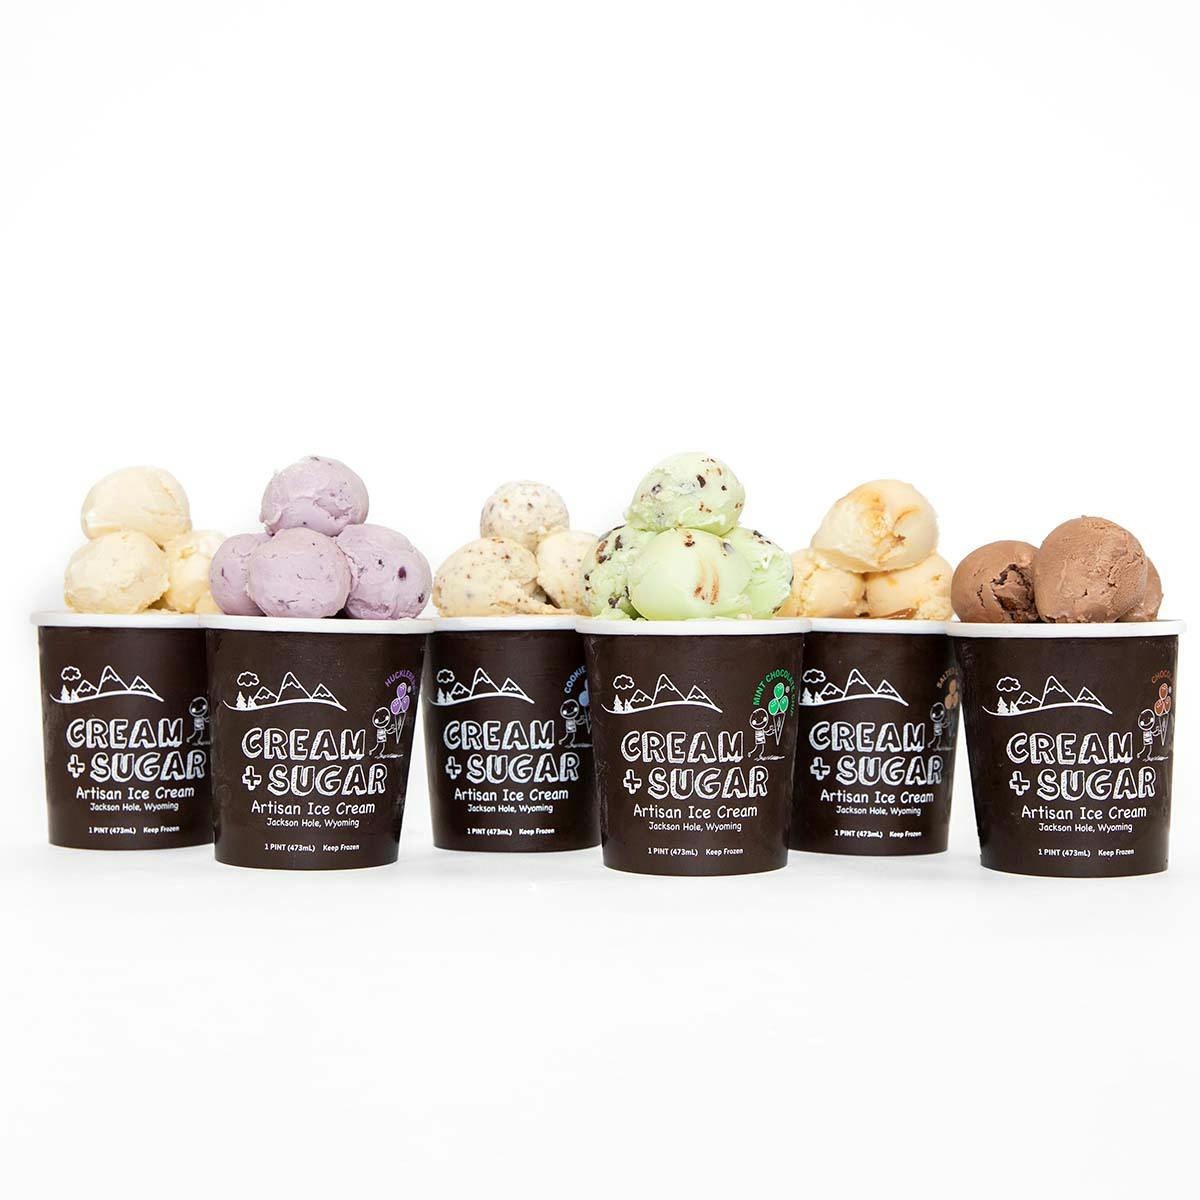 Rainbow Ice Cream - Julie's Eats & Treats ®